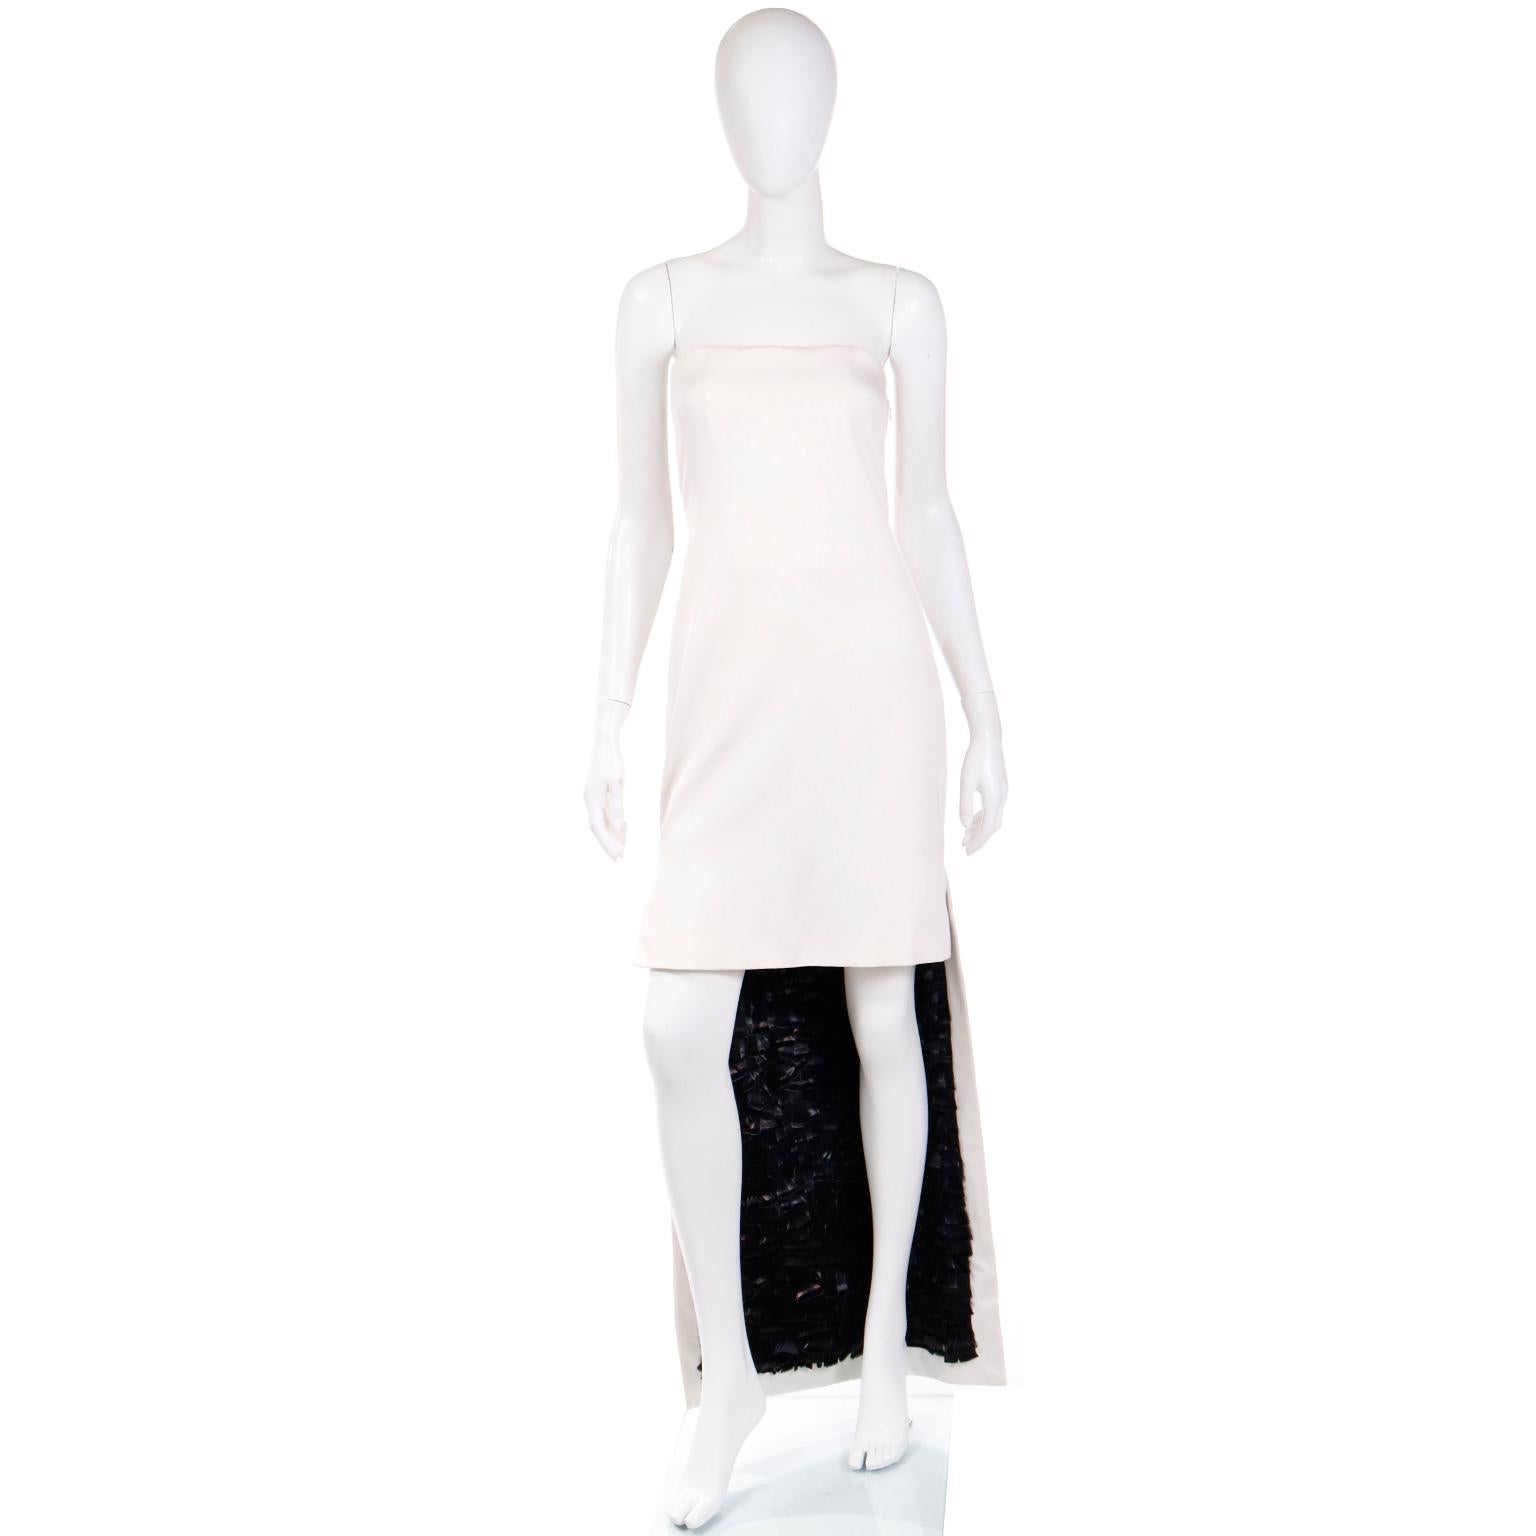 Voici une superbe robe de soirée bustier en soie ivoire Yves Saint Laurent, créée par Tom Ford pour la collection YSL Rive Gauche printemps/été 2001. Cette robe incroyable présente un style unique à taille haute, s'ajustant au-dessus du genou sur le